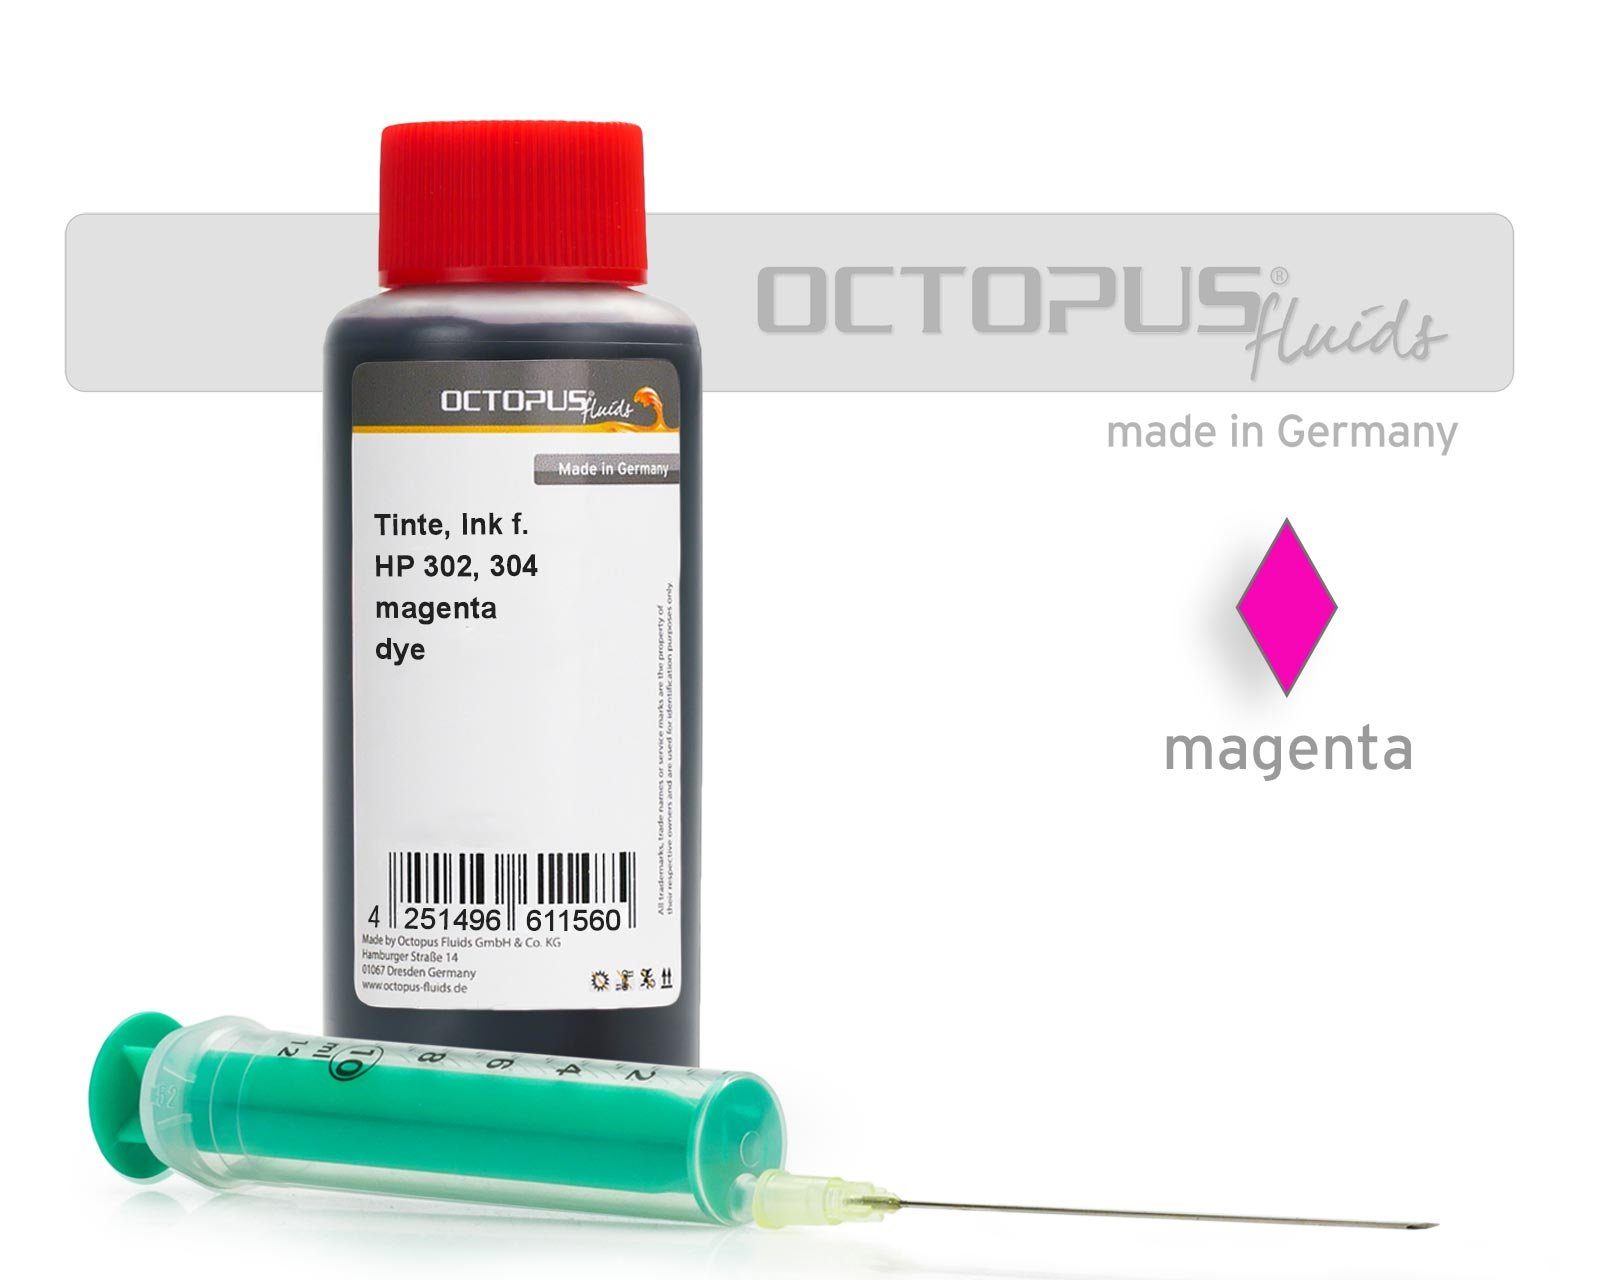 OCTOPUS Fluids Ink Nachfülltinte HP, 1x 304 ml) syringe for 302, (für 100 magenta with HP